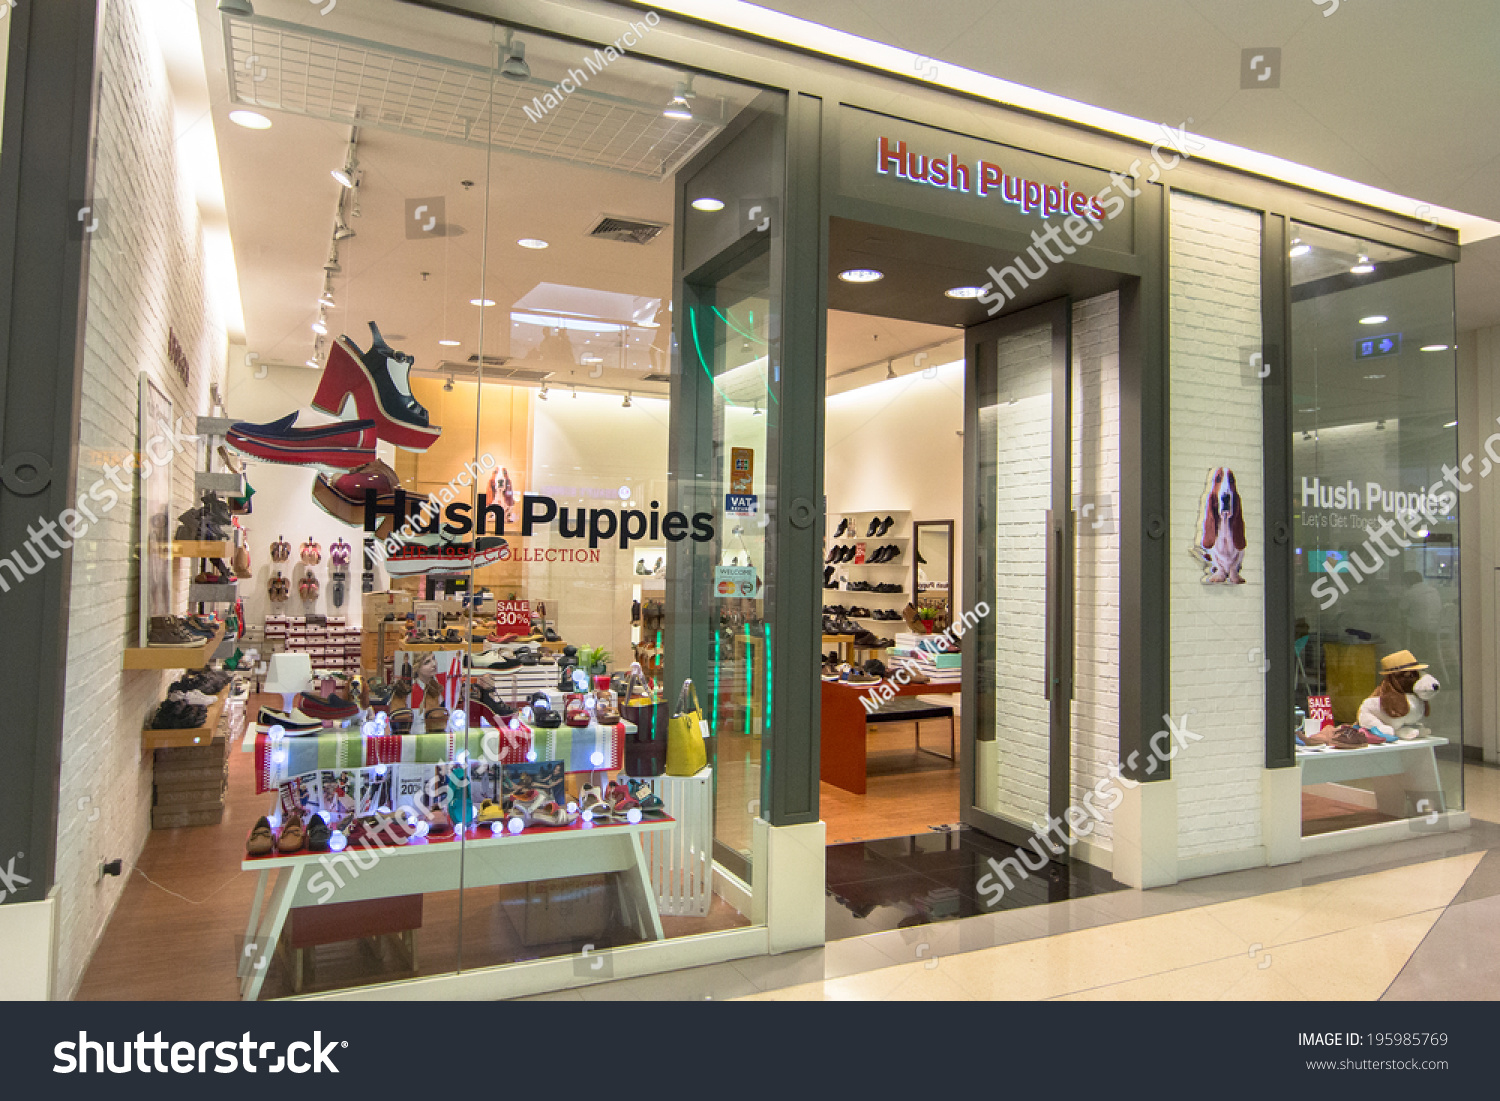 hush puppies store